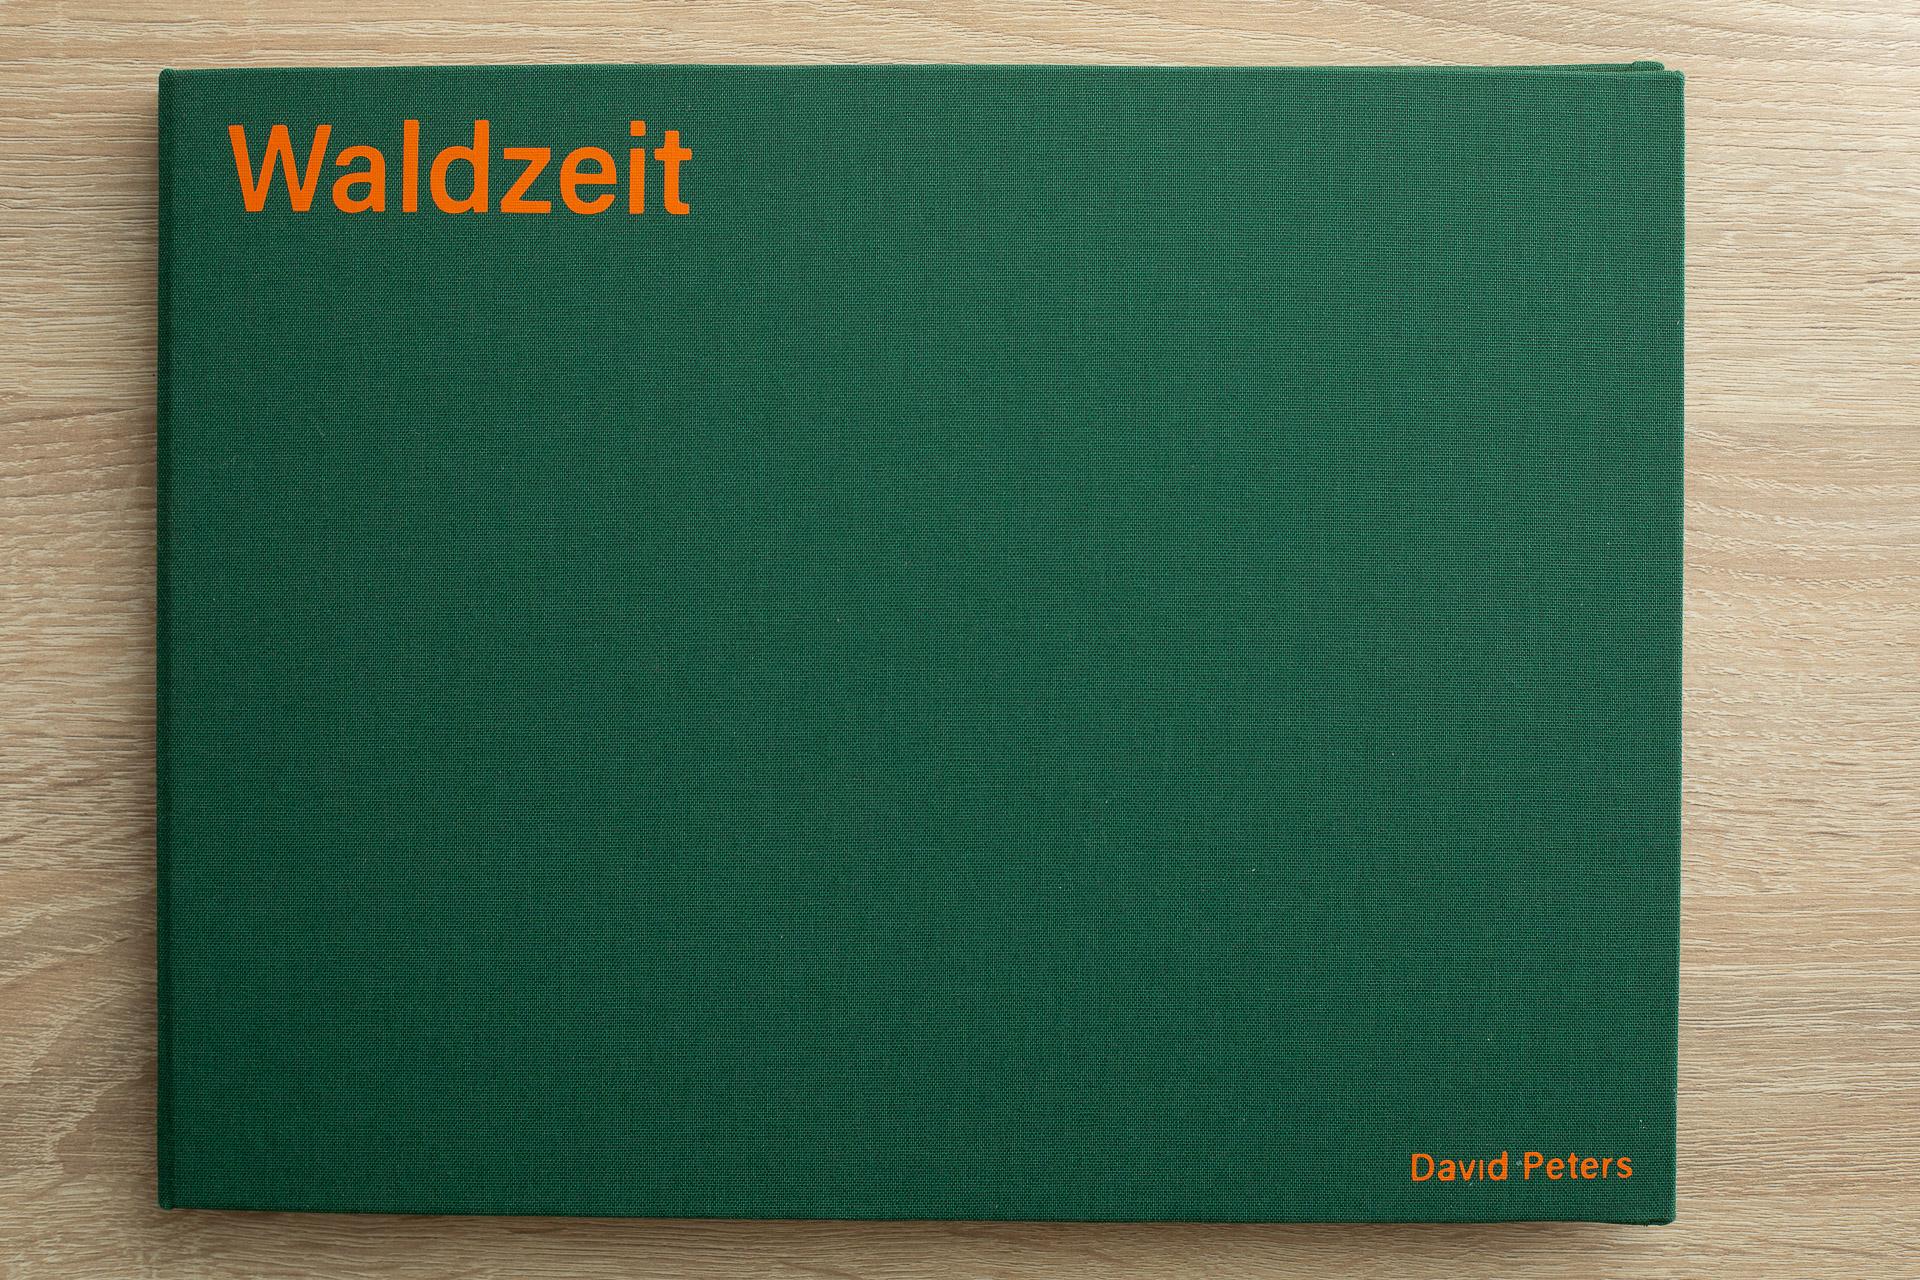 In grünem Leinen eingeschlagenes Buch, mit orangenem Schriftzug oben lins "Waldzeit" rechts unten der Name des Autos "David Peters"